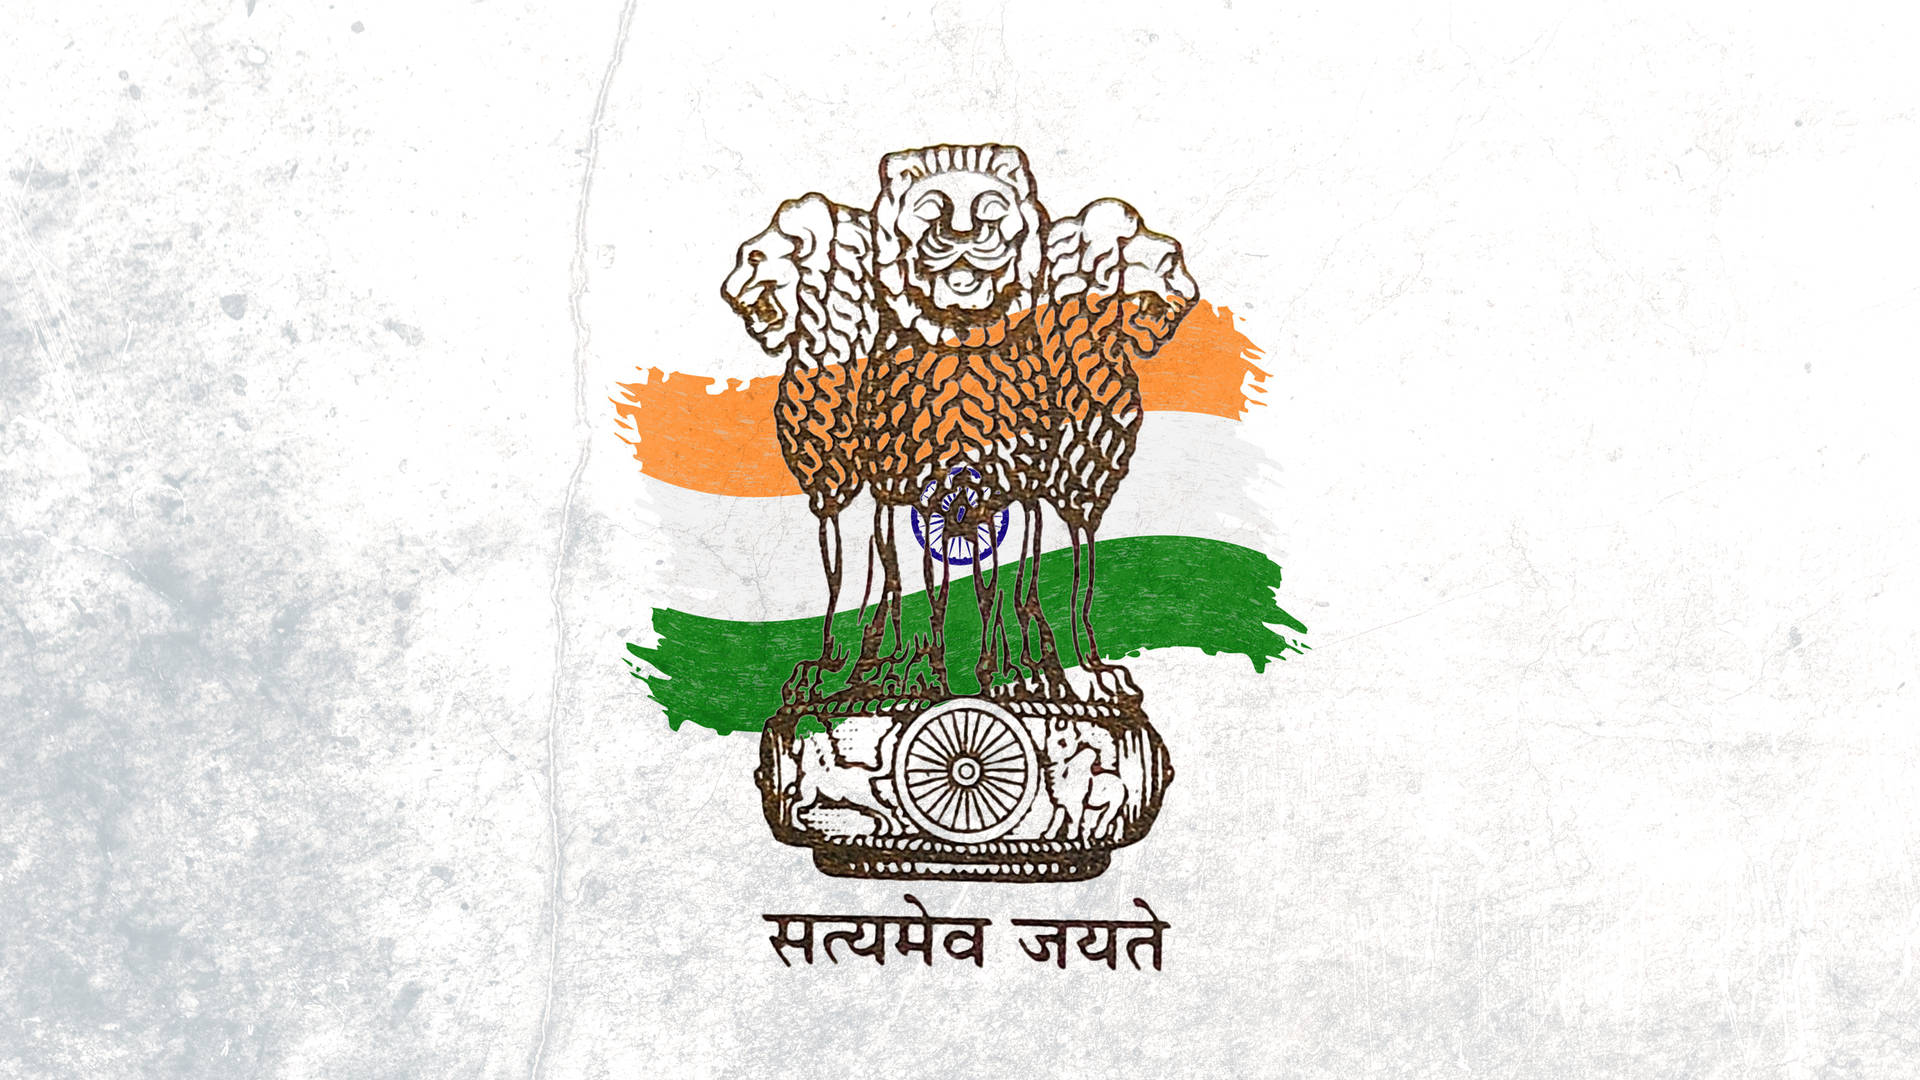 Upsc Logo With Flag Of India Background